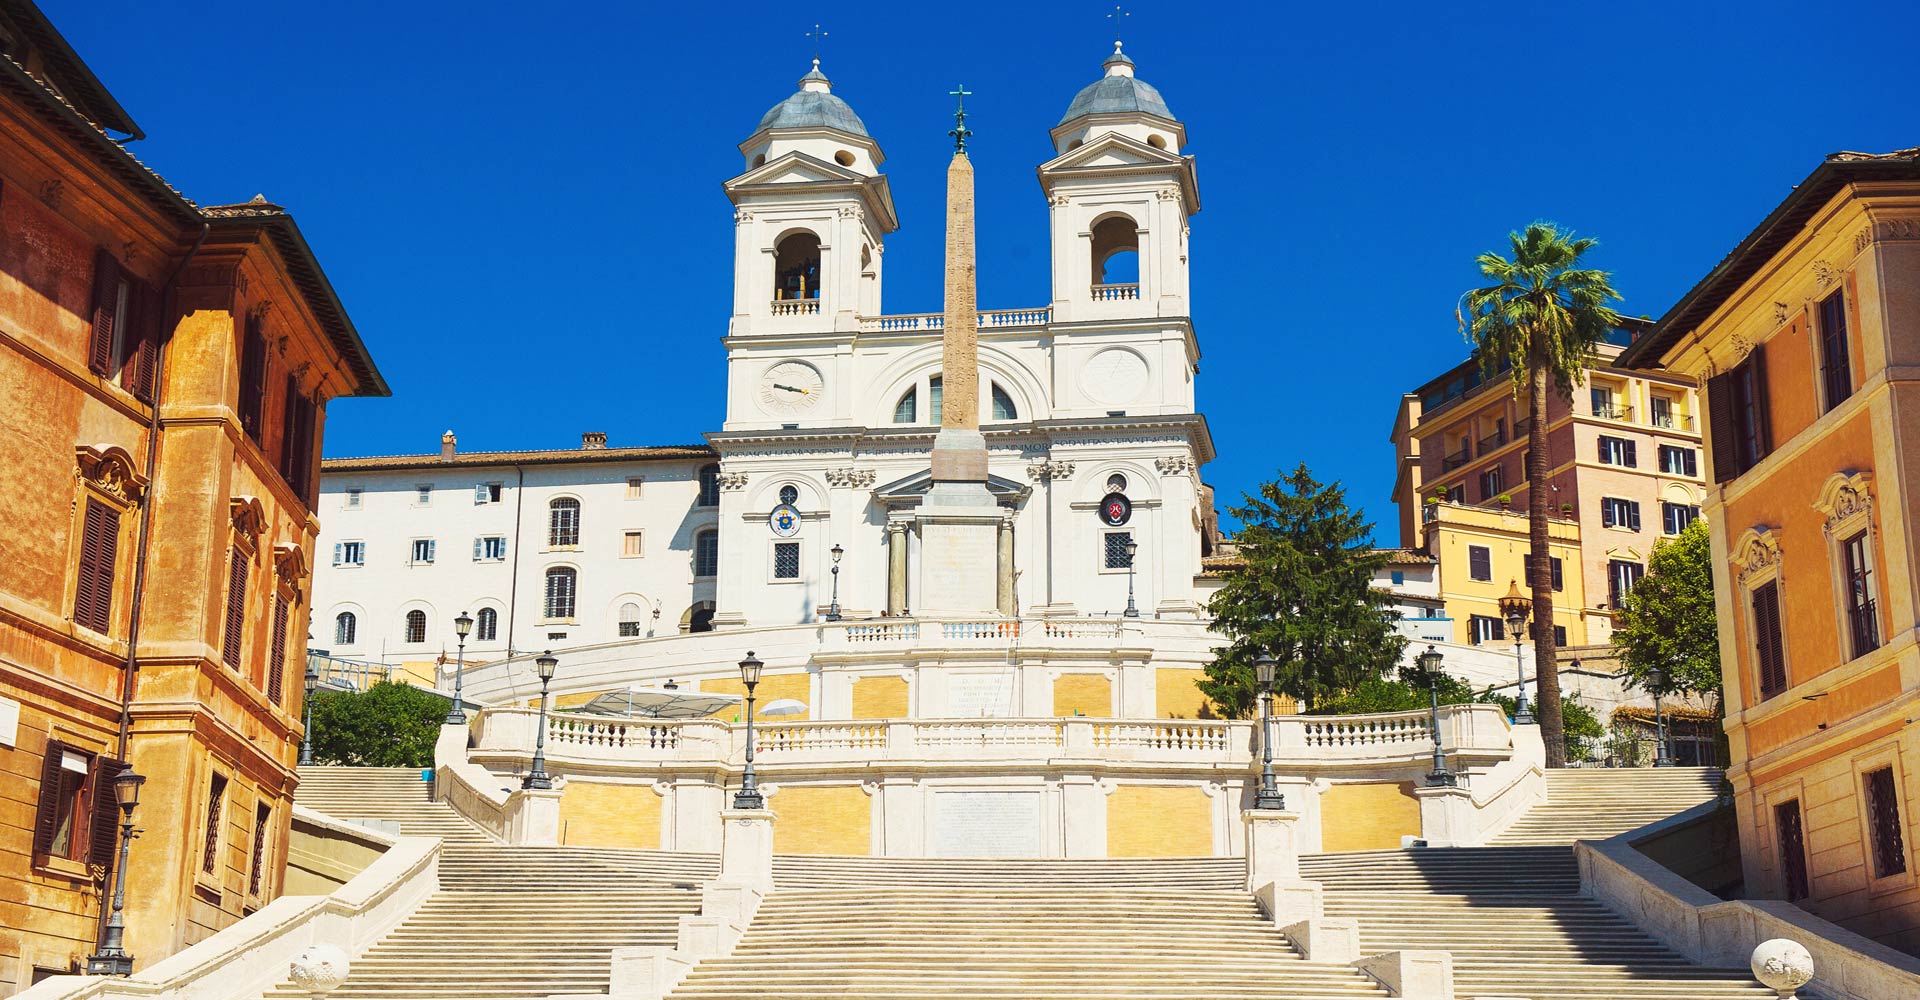 The church Trinità dei Monti in Rome.